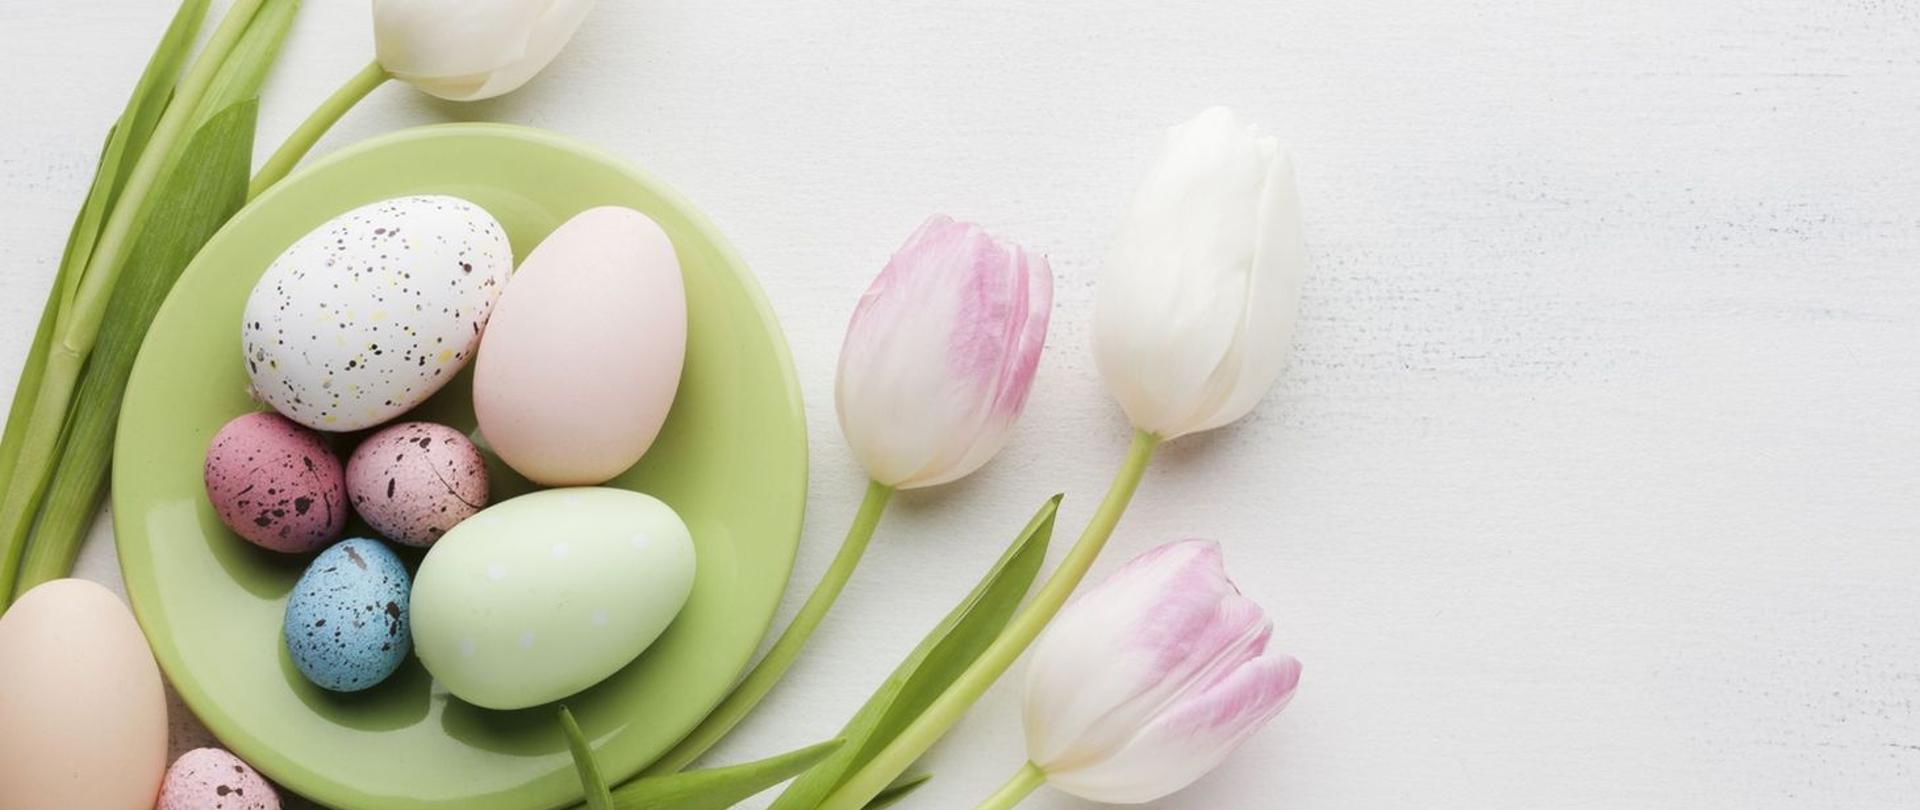 obraz przedstawia dekorację świąteczną (wielkanocną . Na dole po prawej na zielonym talerzu ułożone kolorowe jajka wokół dekoracja z tulipanów.